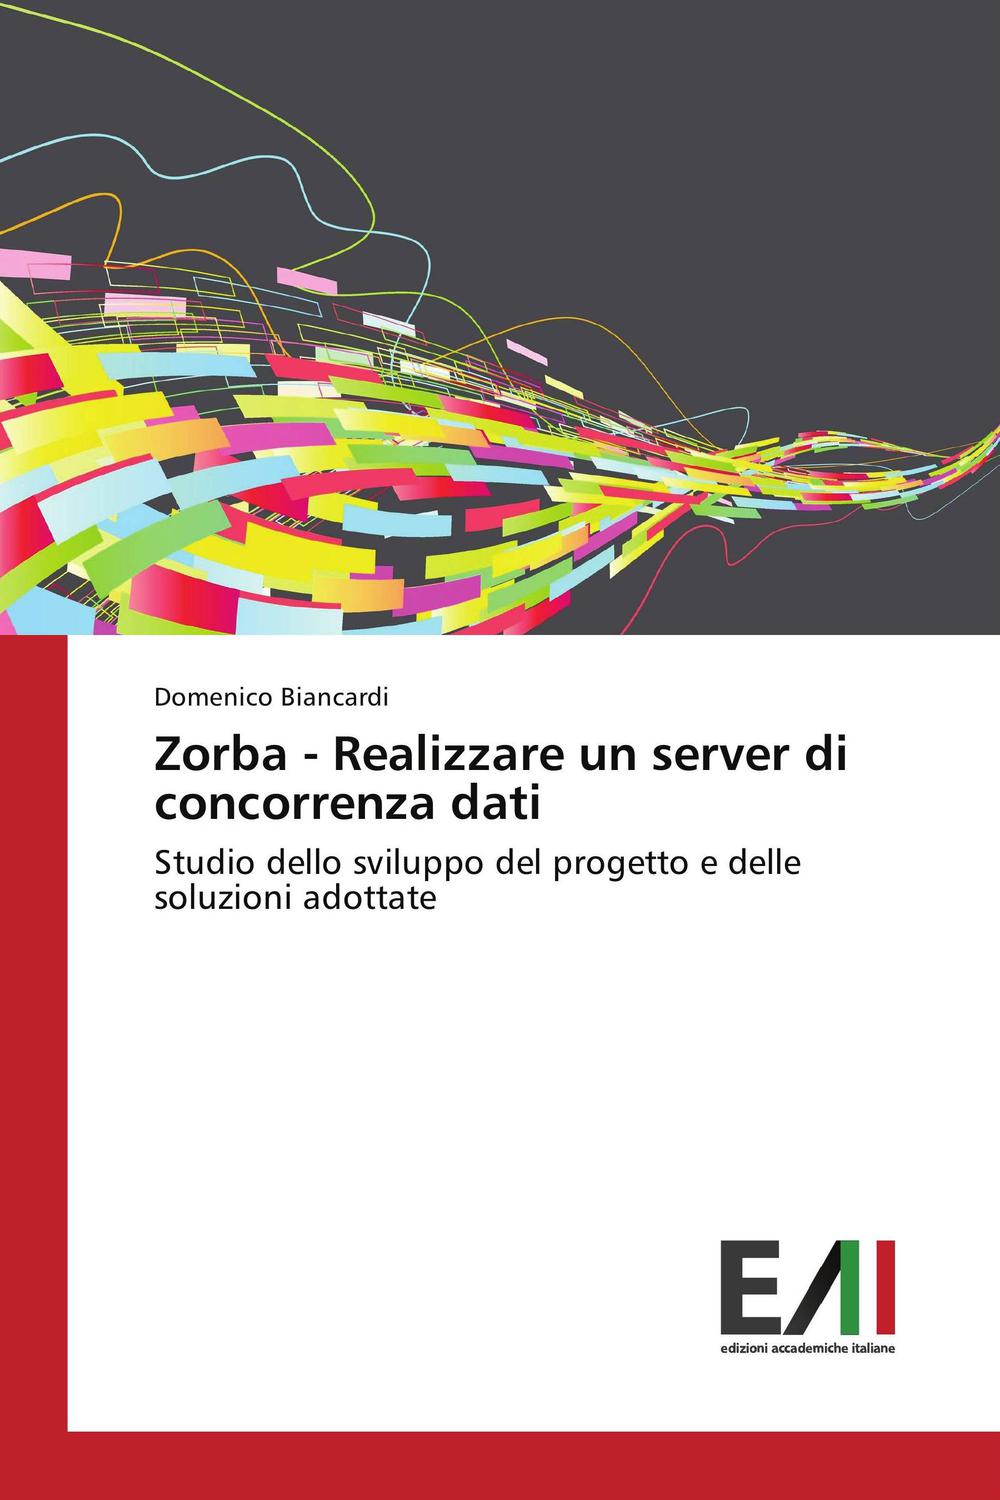 Zorba - Realizzare un server di concorrenza dati - Domenico Biancardi